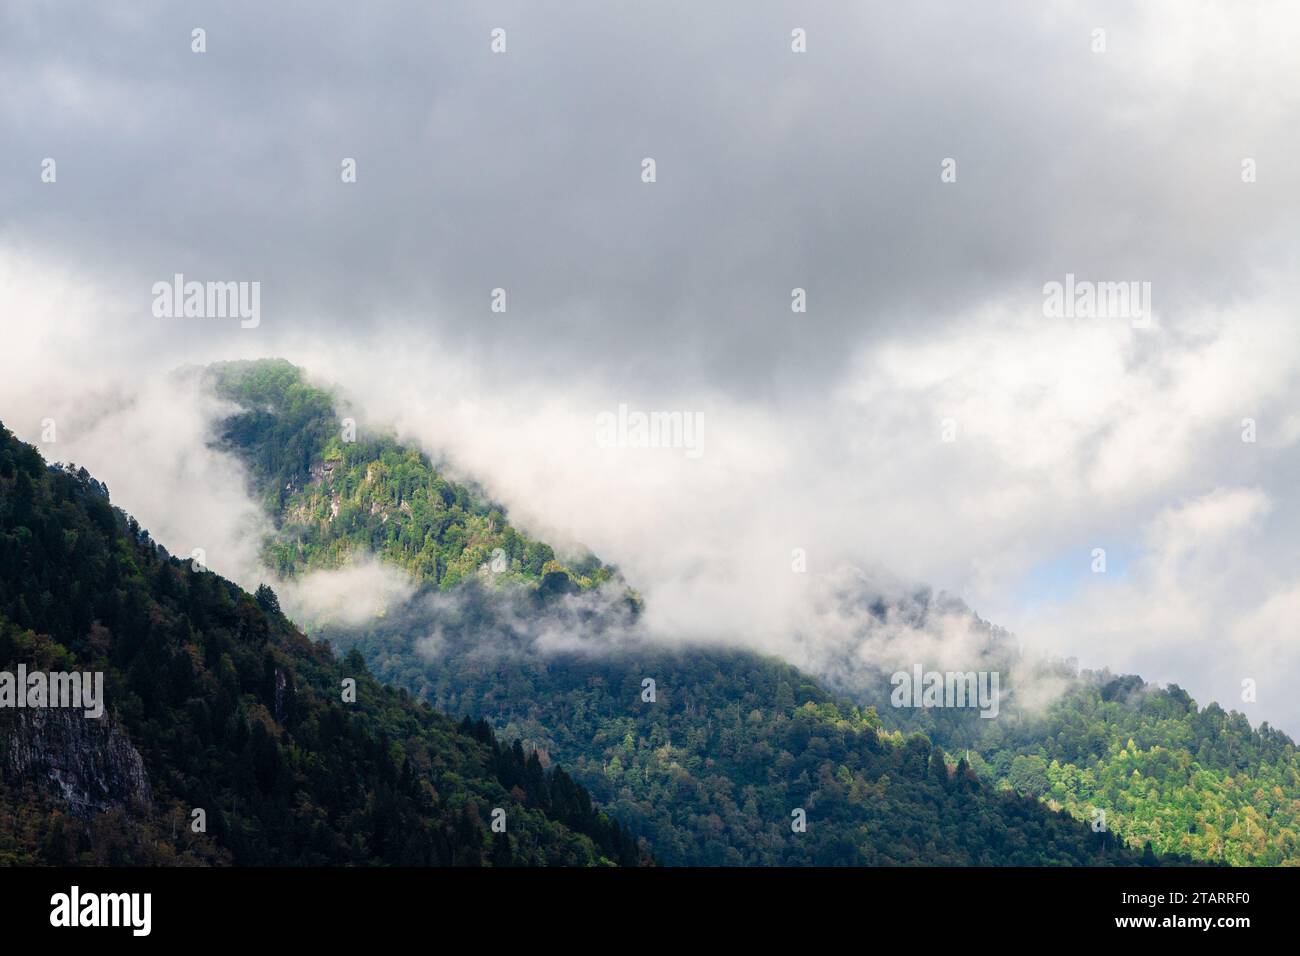 Viaggia in Georgia: Le nuvole grigie si trovano sulle cime delle montagne nel parco nazionale di Machakhela in Agiaria il giorno d'autunno Foto Stock